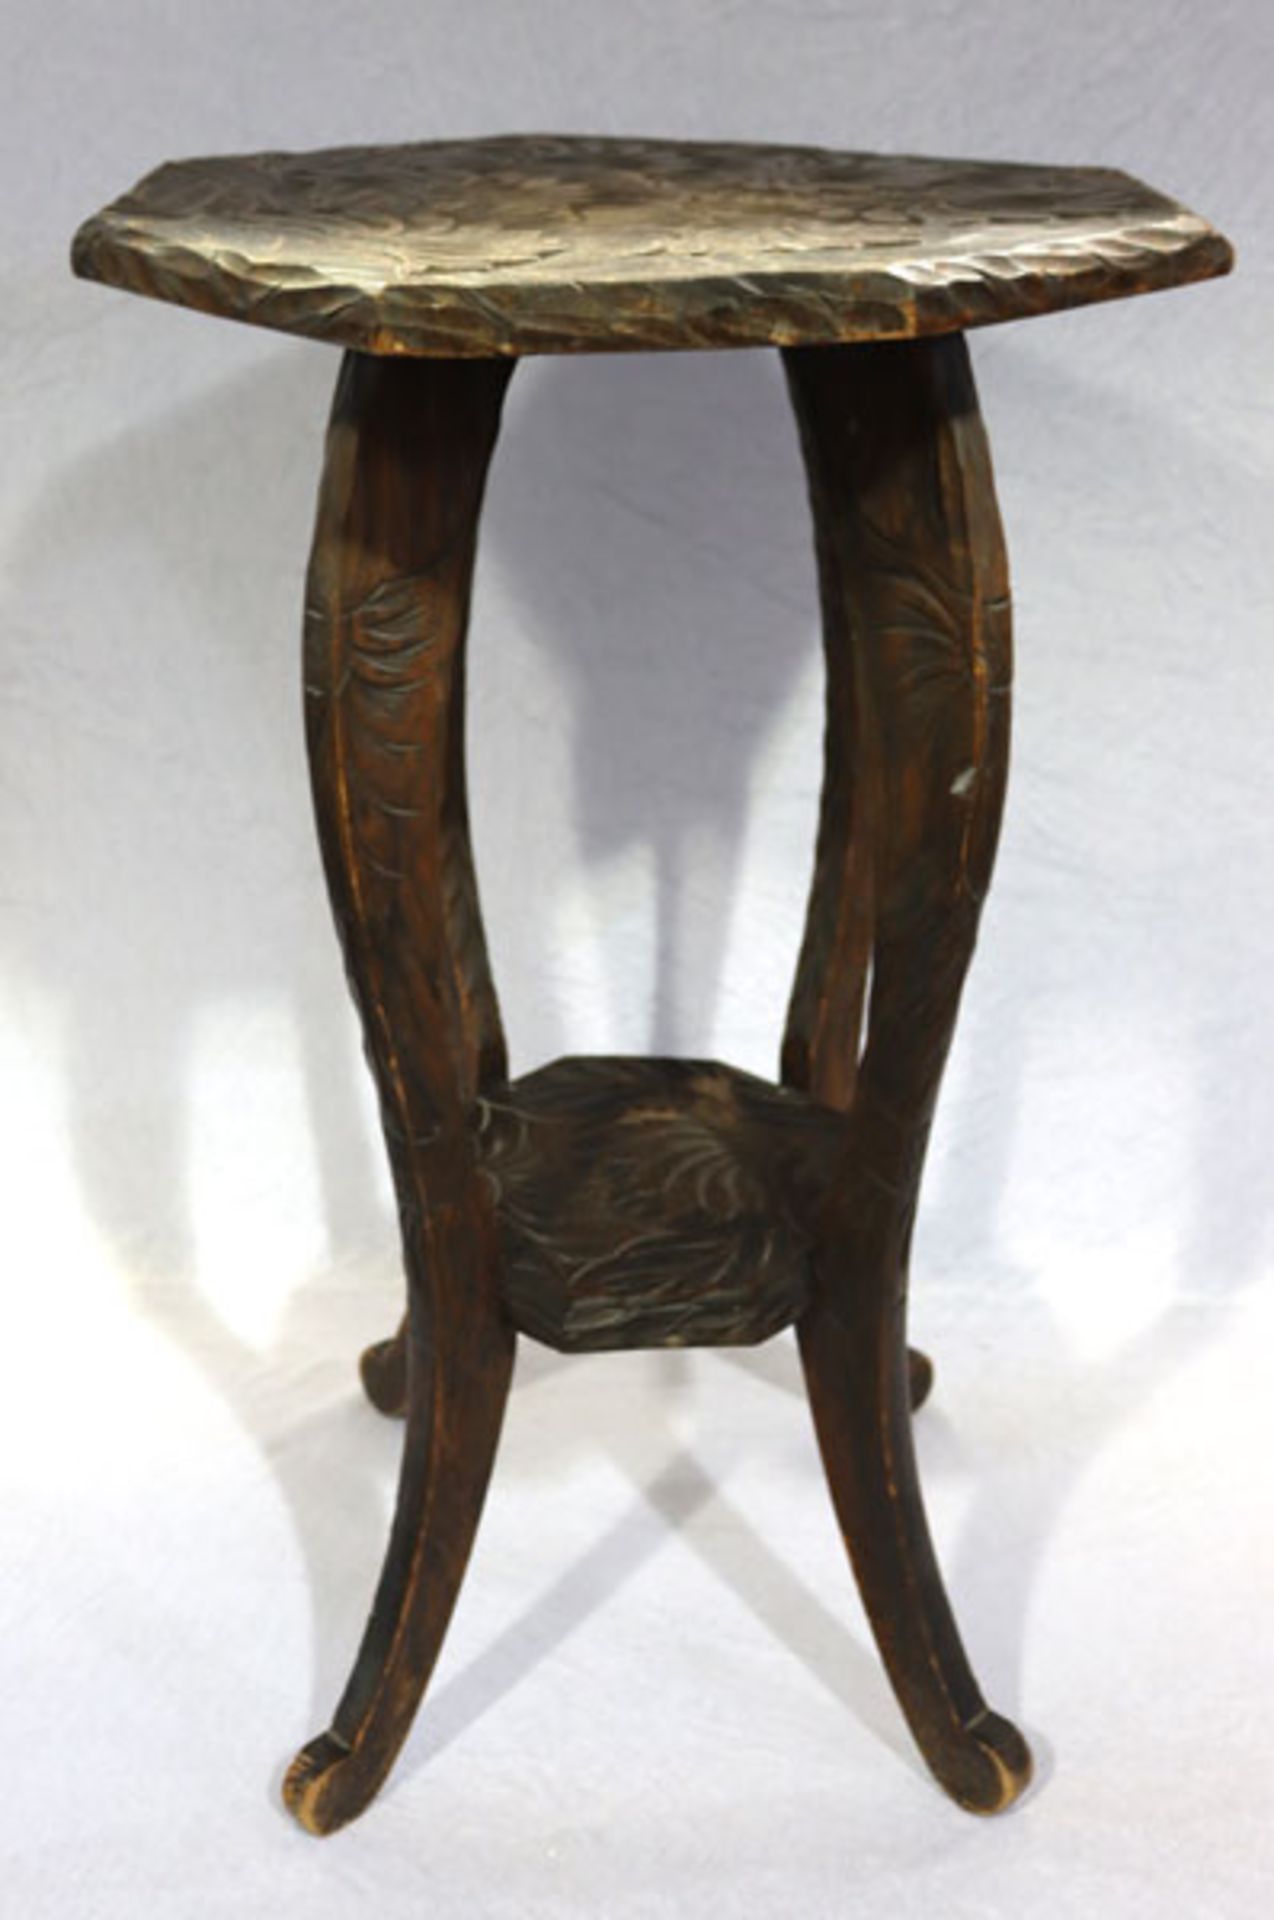 Holz Blumensäule, gebeizt, auf geschwungenen Beinen, mit Blattdekor beschnitzt, H 70 cm, D 46 cm,